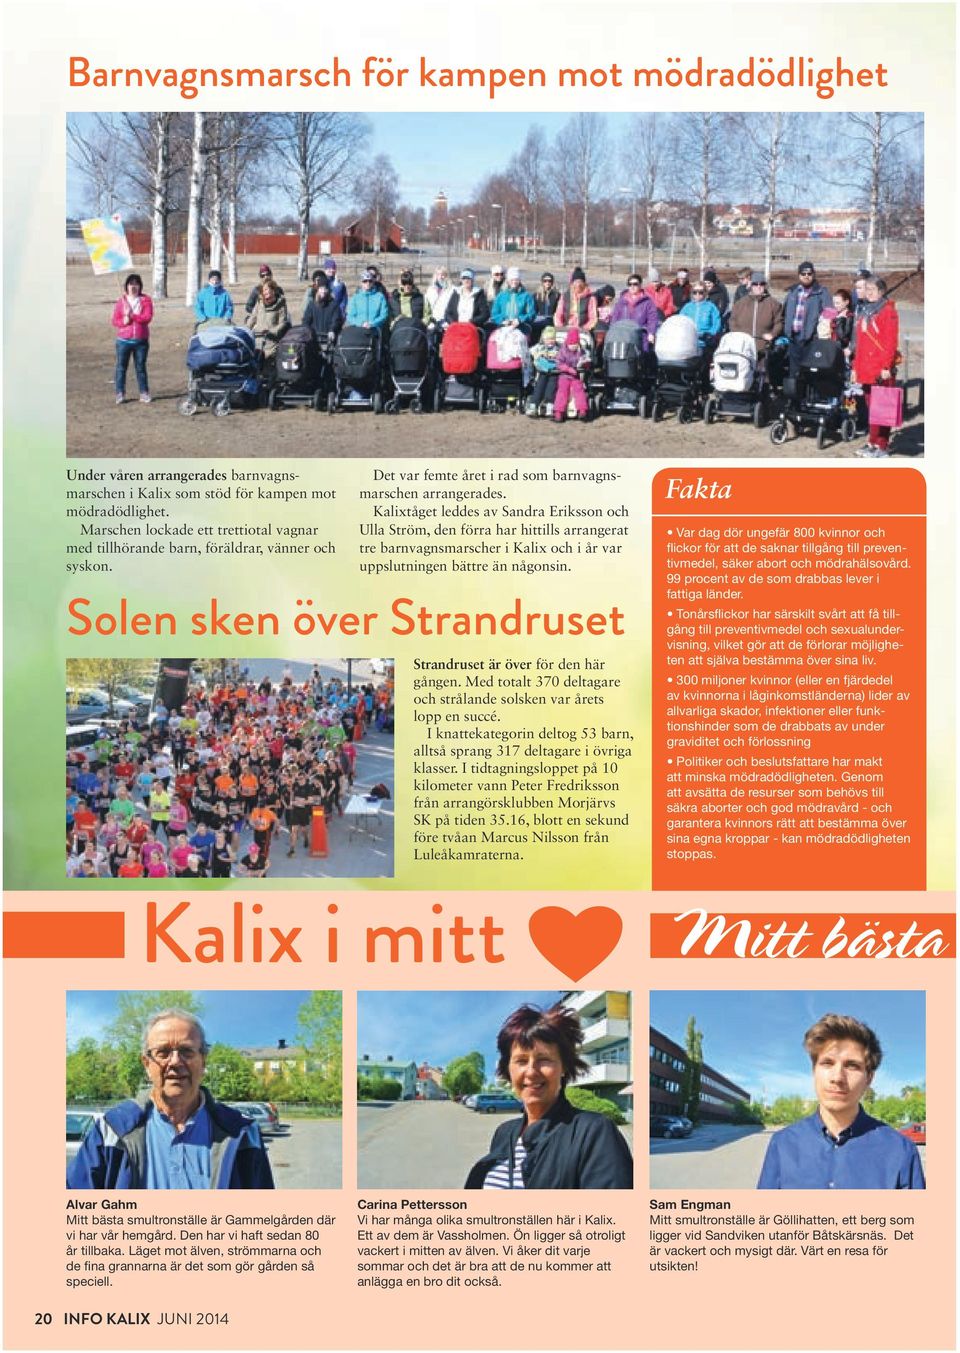 Kalixtåget leddes av Sandra Eriksson och Ulla Ström, den förra har hittills arrangerat tre barnvagnsmarscher i Kalix och i år var uppslutningen bättre än någonsin.